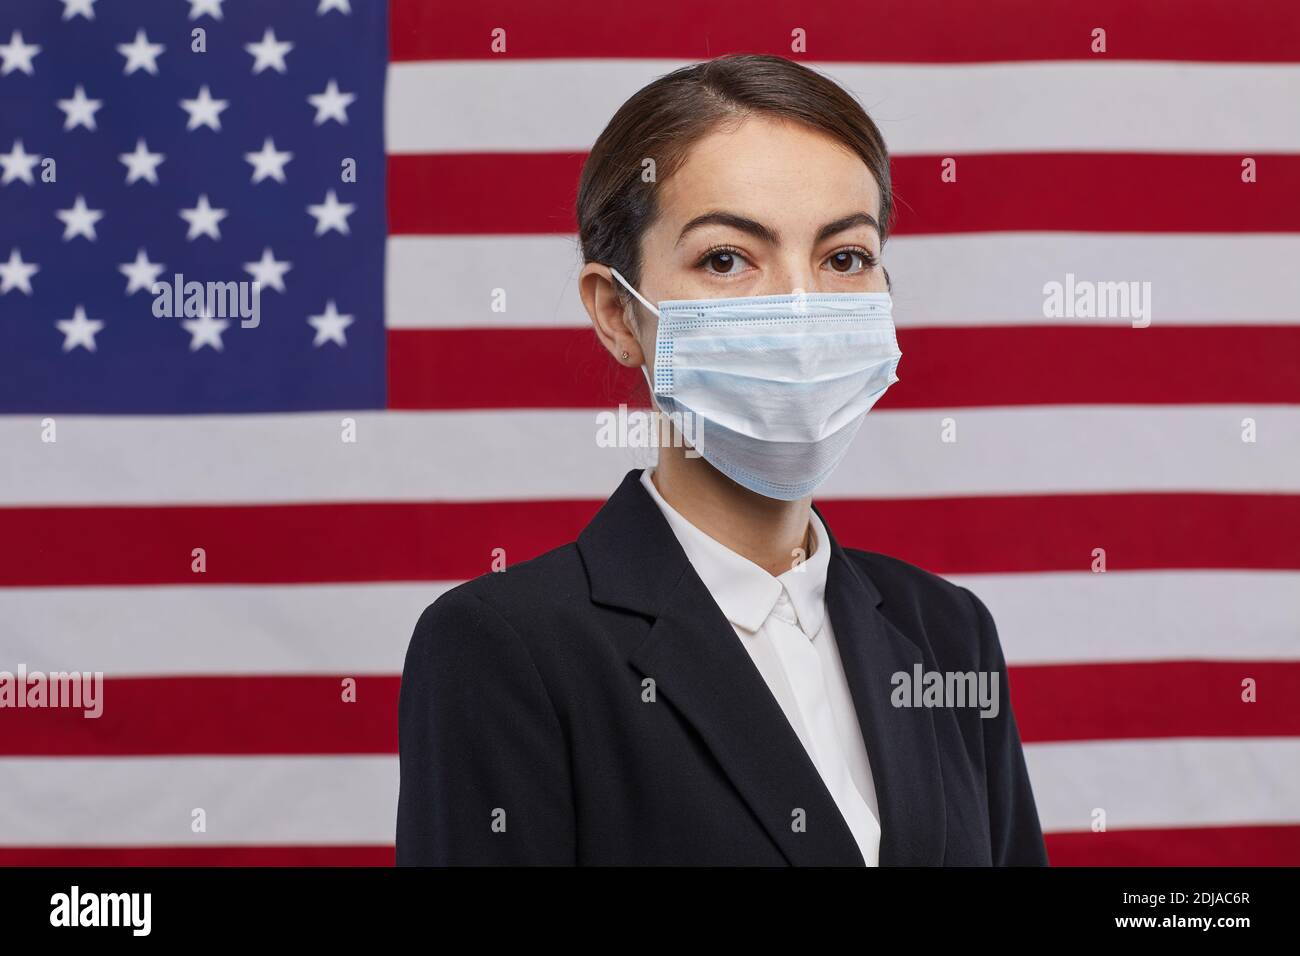 Ritratto di donna uomo politico indossando maschera e guardando la fotocamera mentre si sta in piedi contro lo sfondo della bandiera degli Stati Uniti, copia spazio Foto Stock